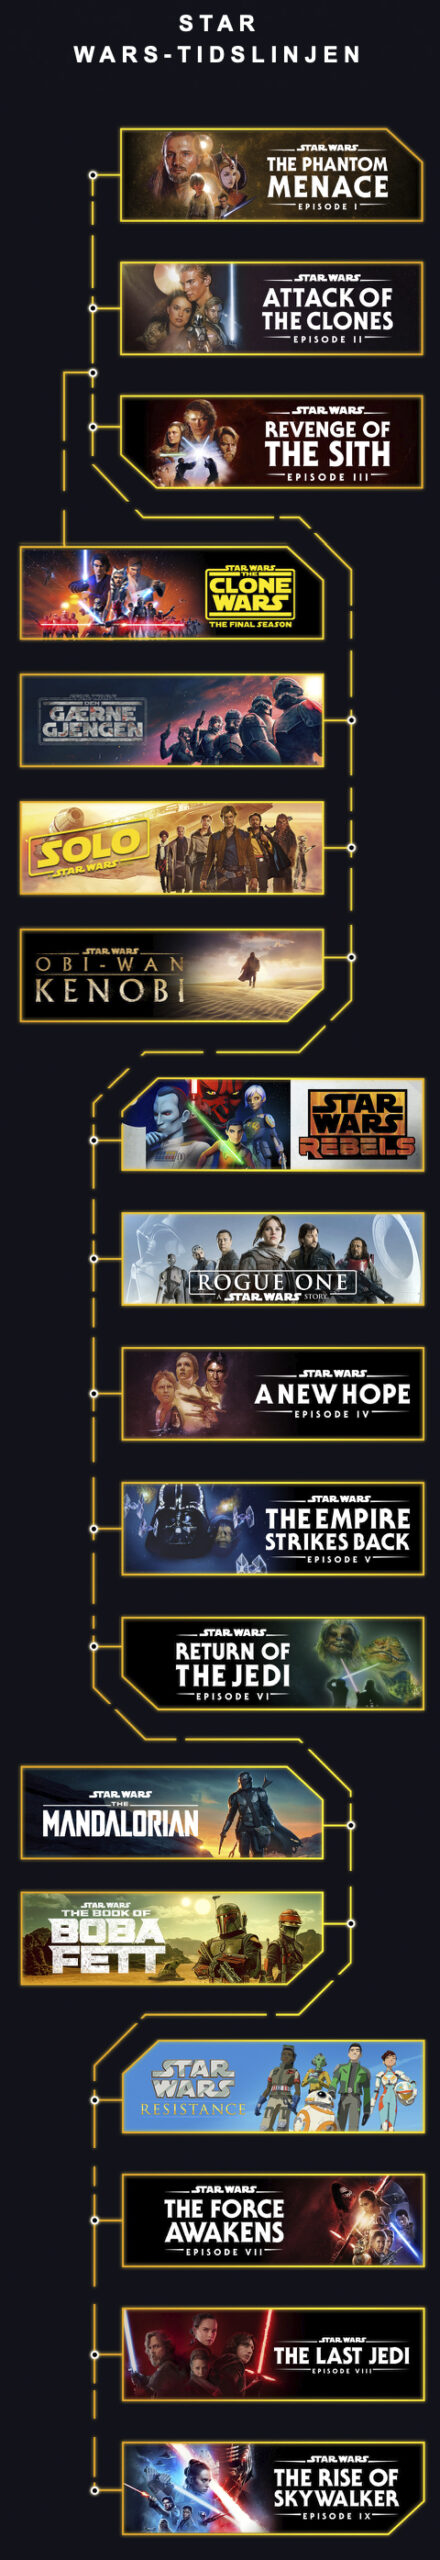 Star wars timeline